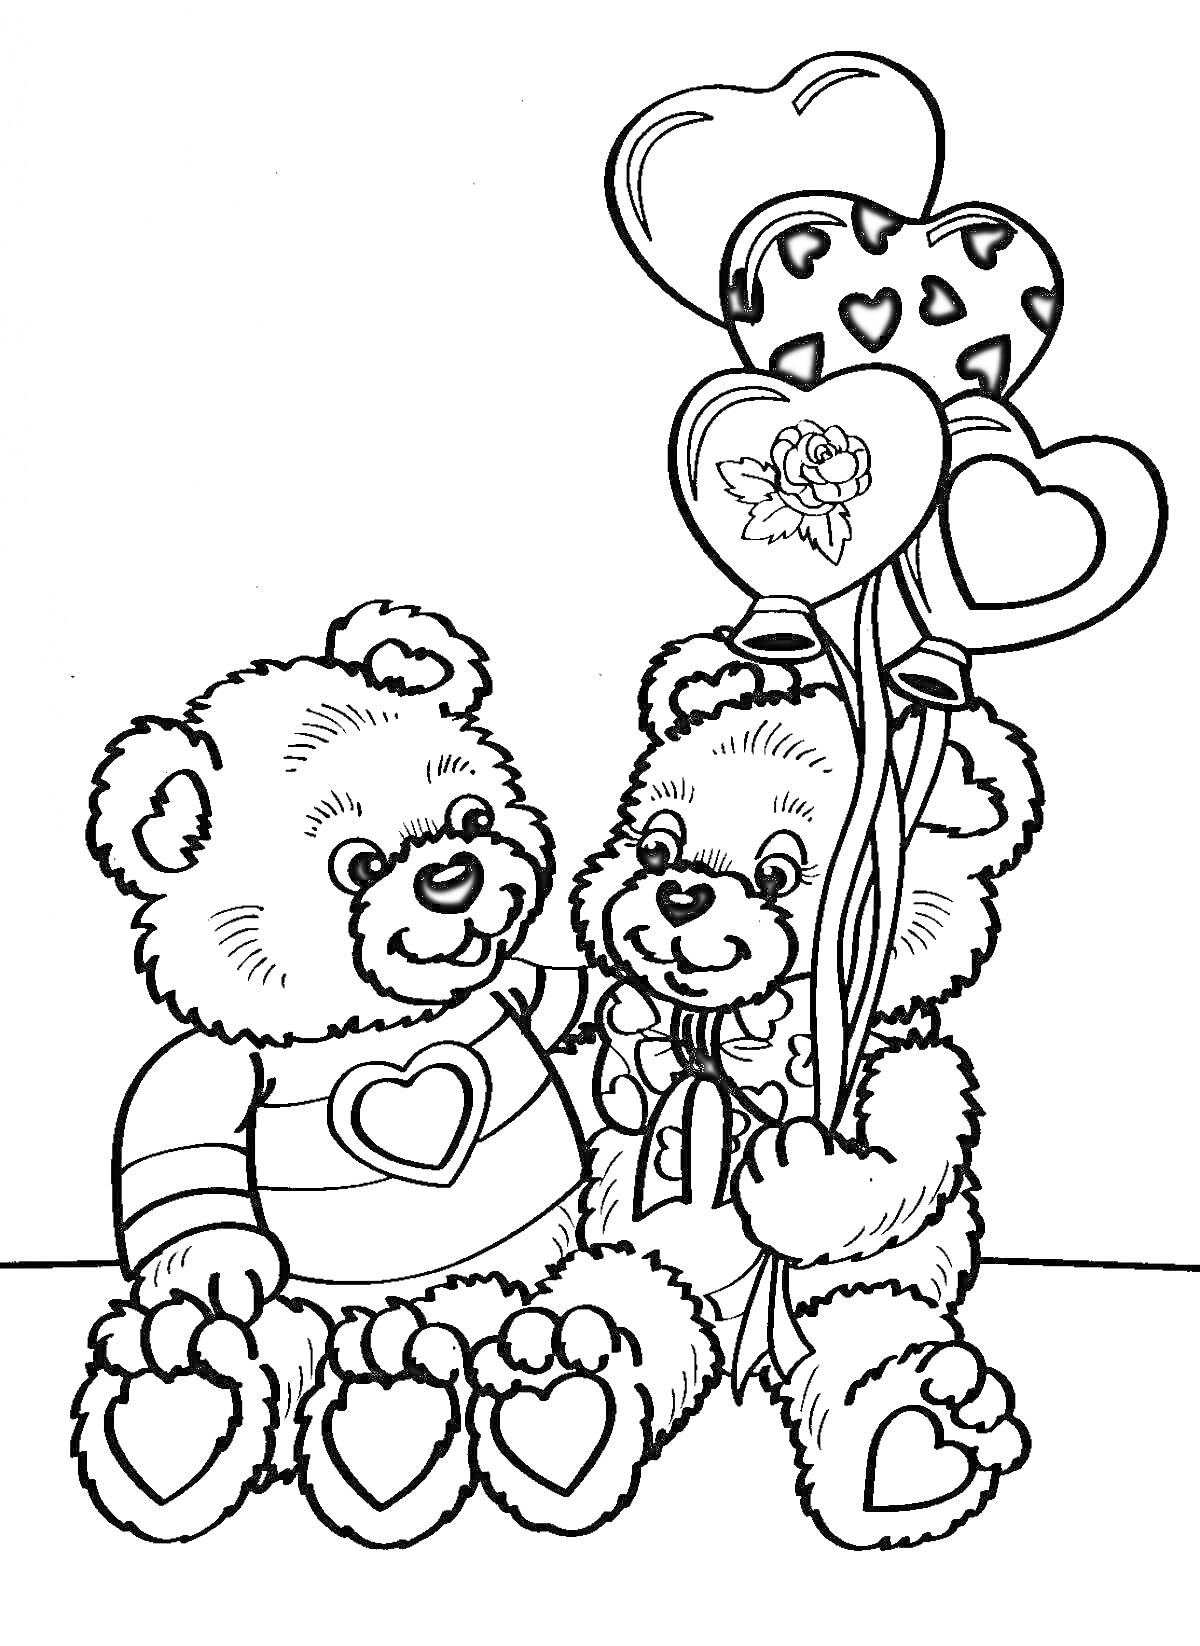 РаскраскаДва медвежонка Тедди с воздушными шарами в форме сердец